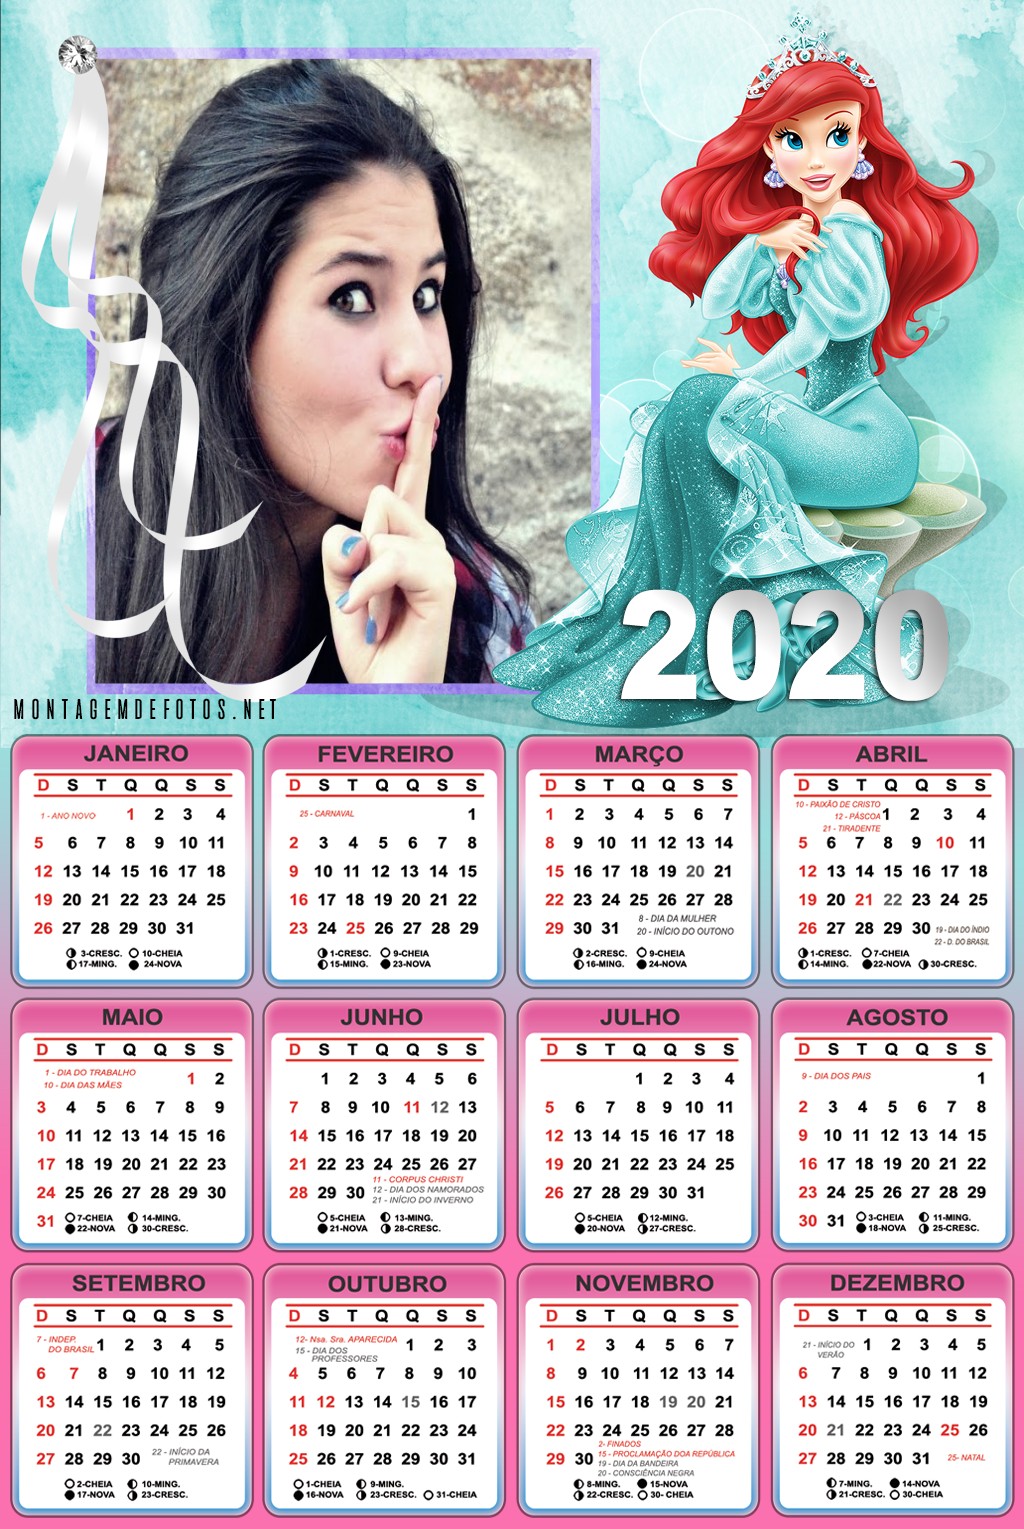 montagem-de-fotos-em-calendario-pequena-sereia-2020